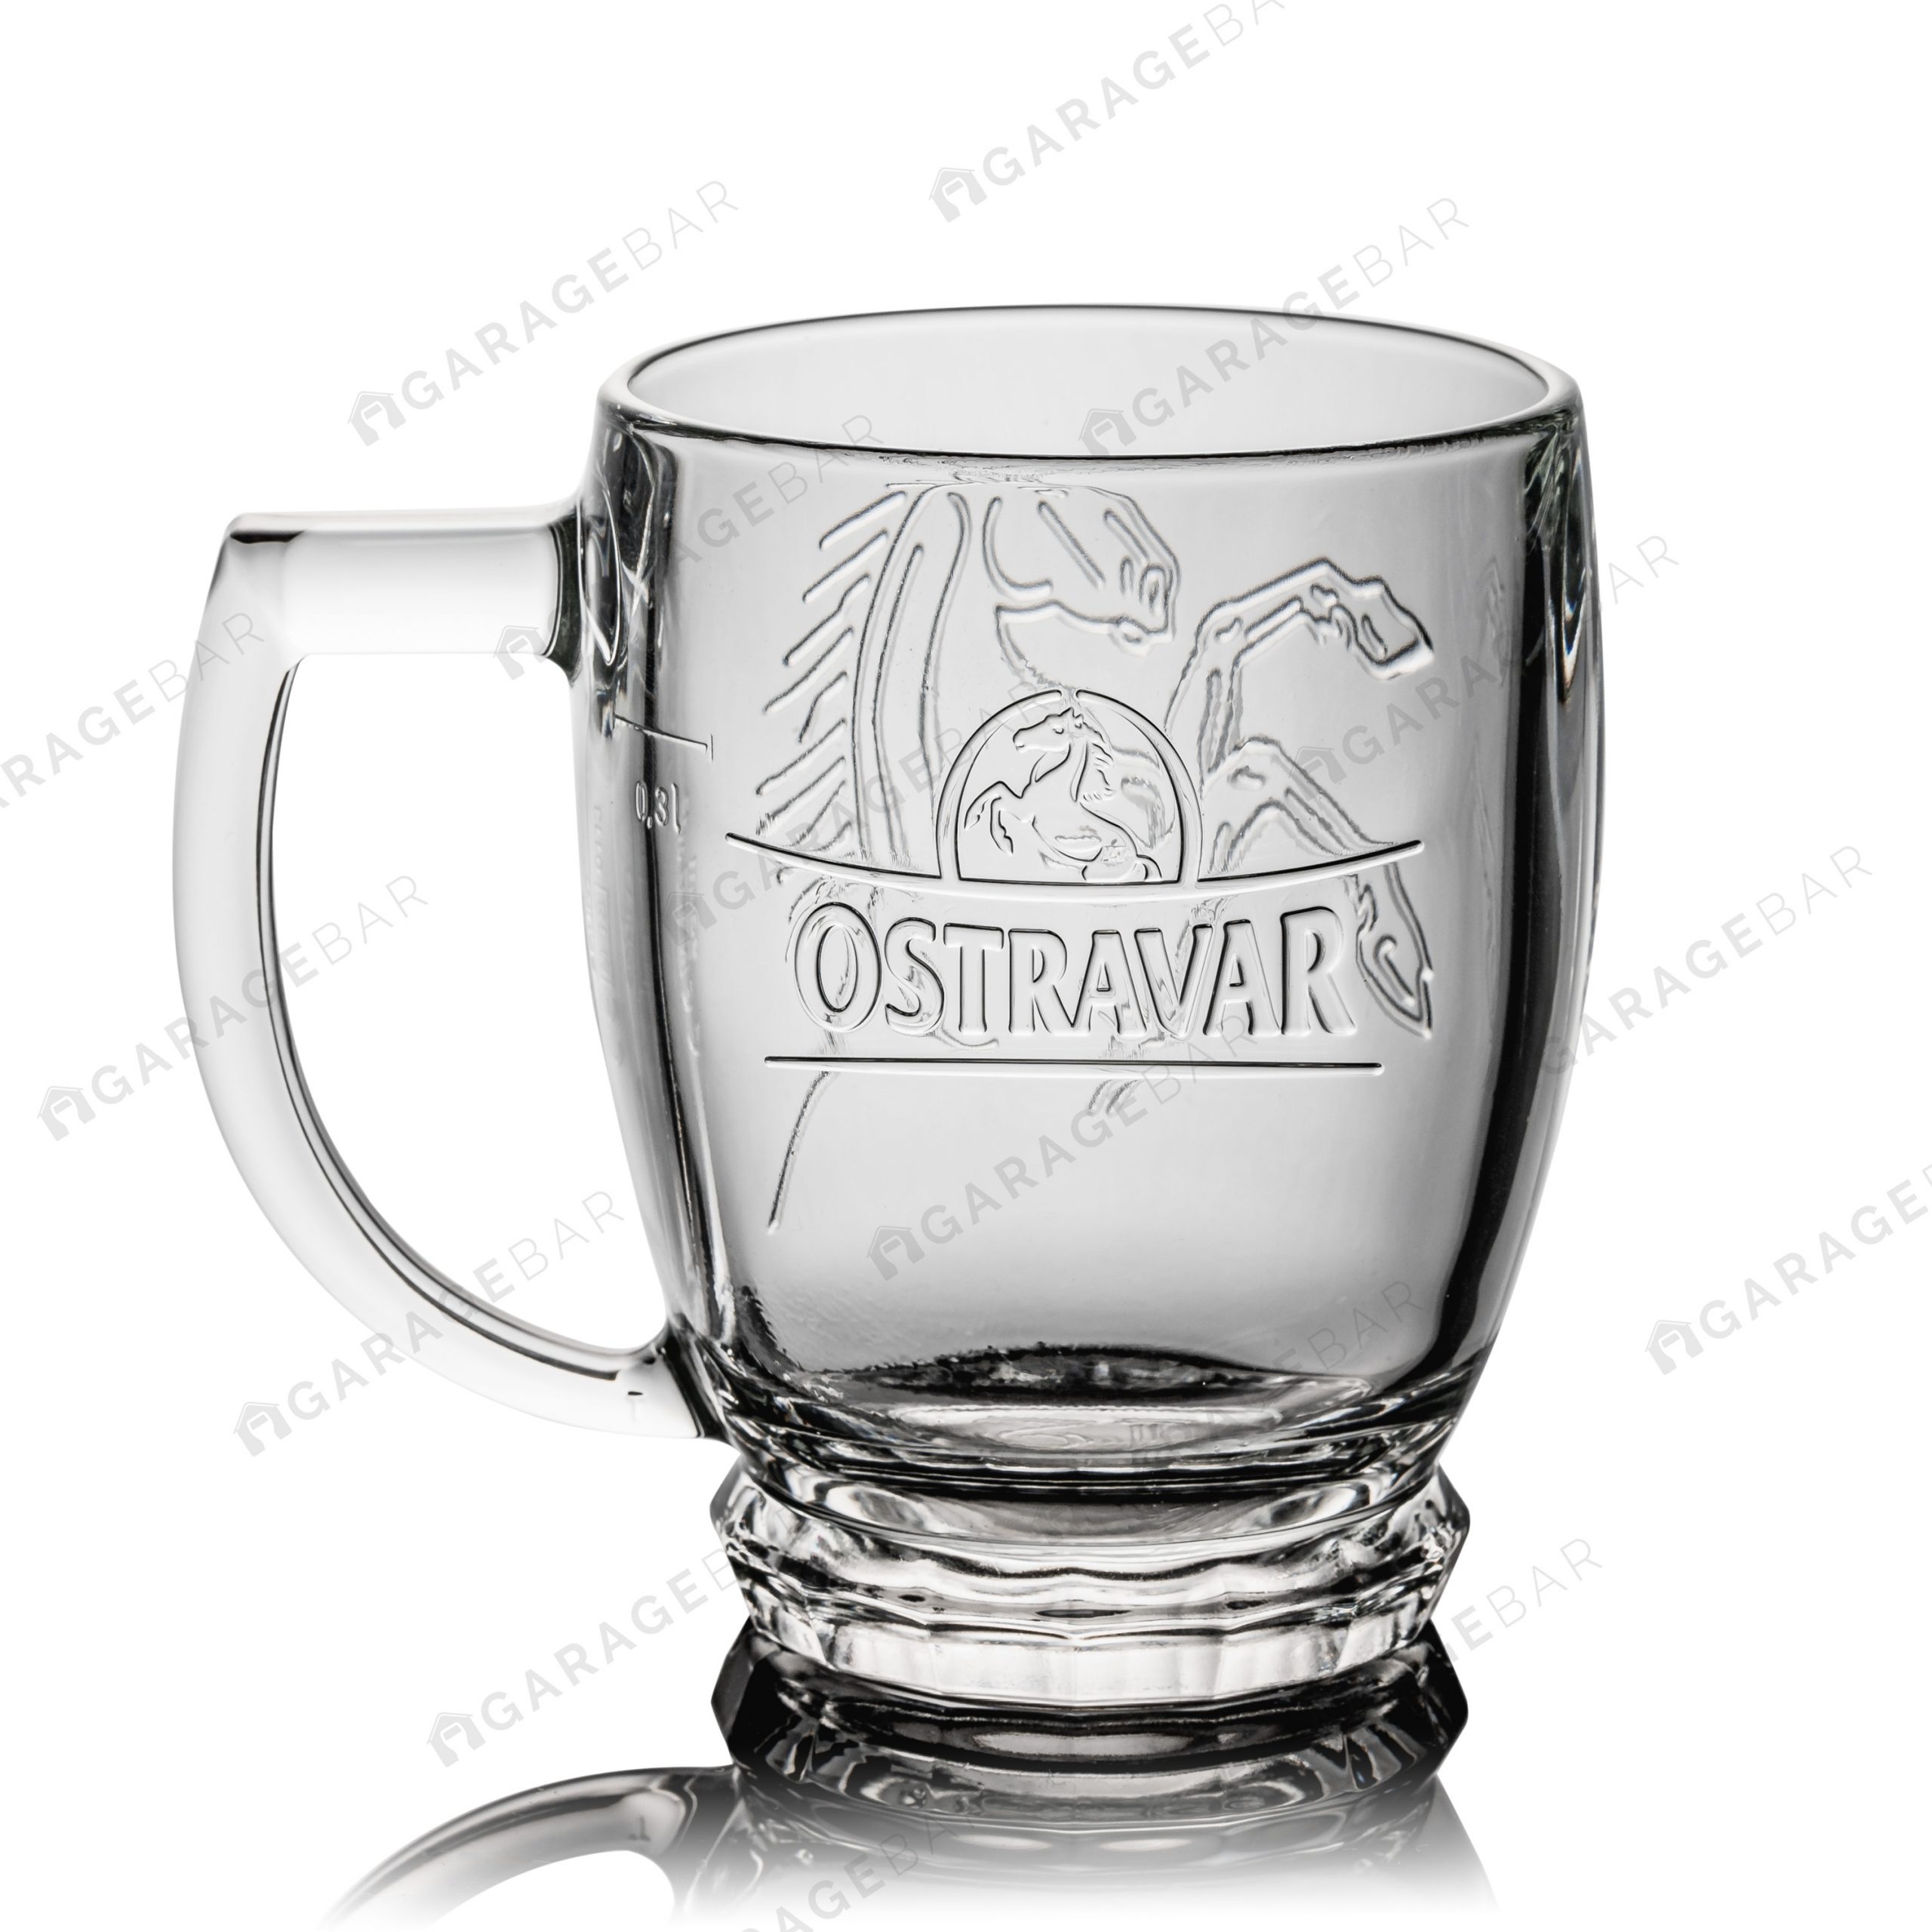 Ostravar 0,3l Beer Glass